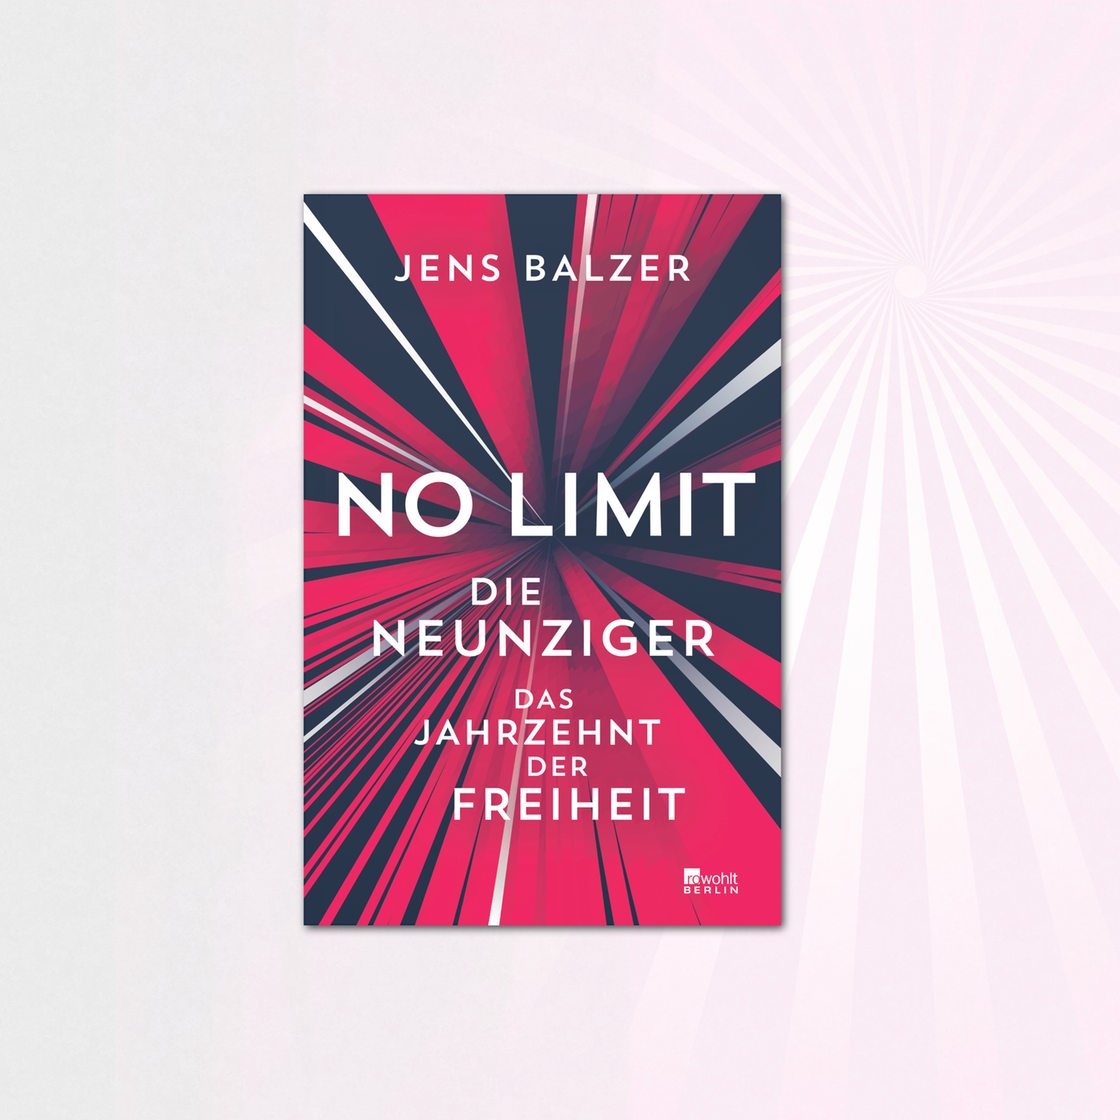 Jens Balzer: No Limit - Die Neunziger- Das Jahrzehnt der Freiheit, Rowohlt